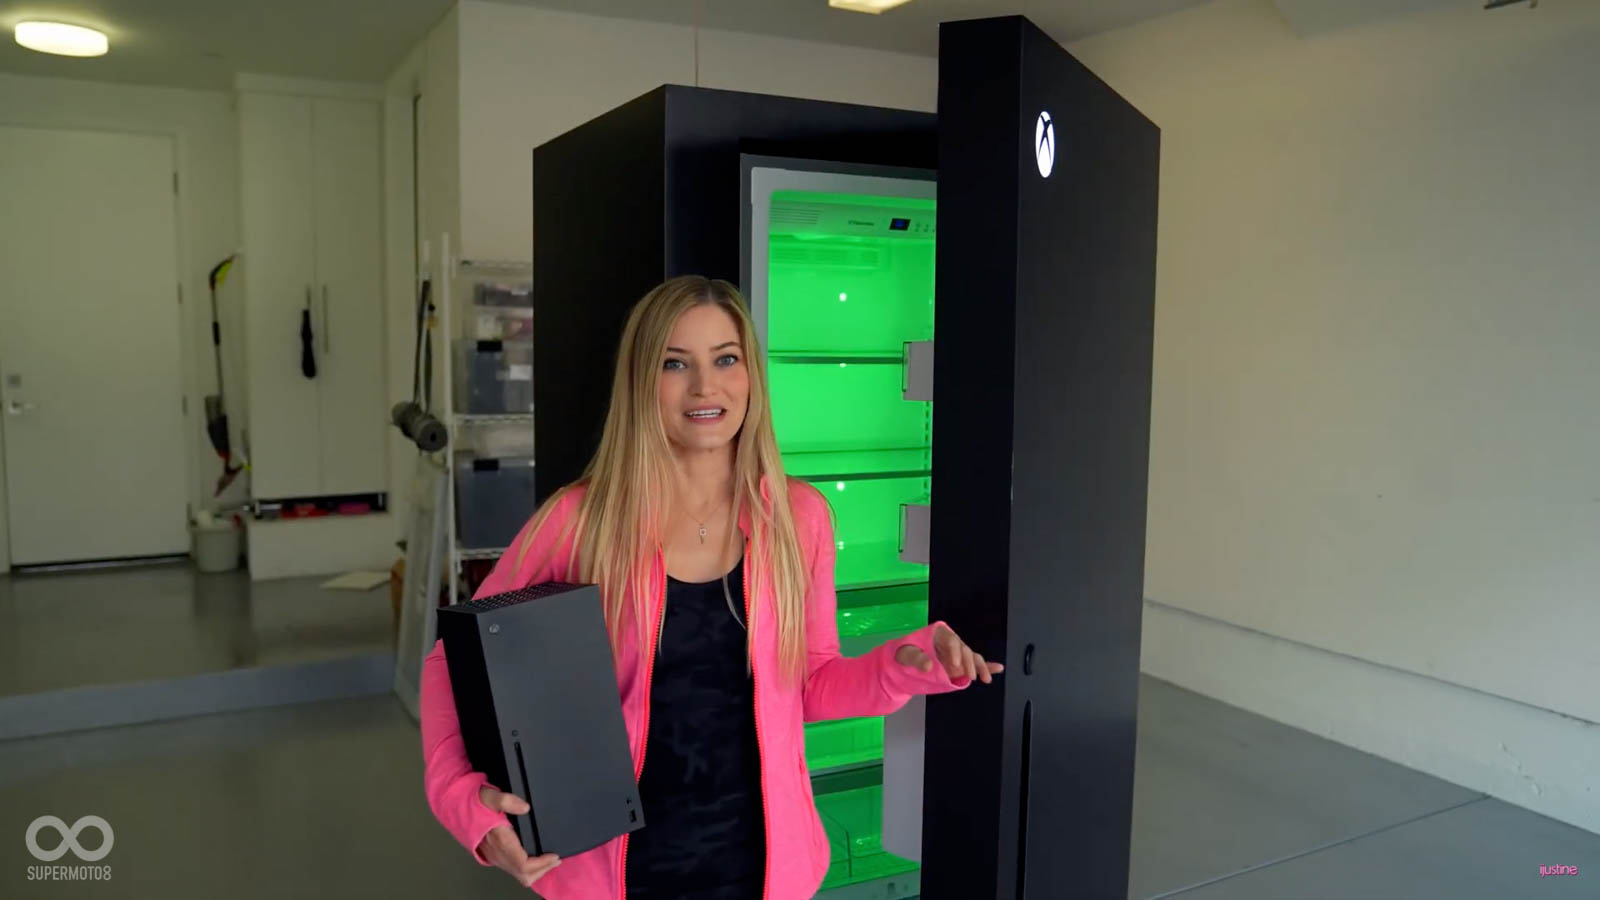 光碟機被改為冰箱把手；內部也換上XBOX招牌綠光